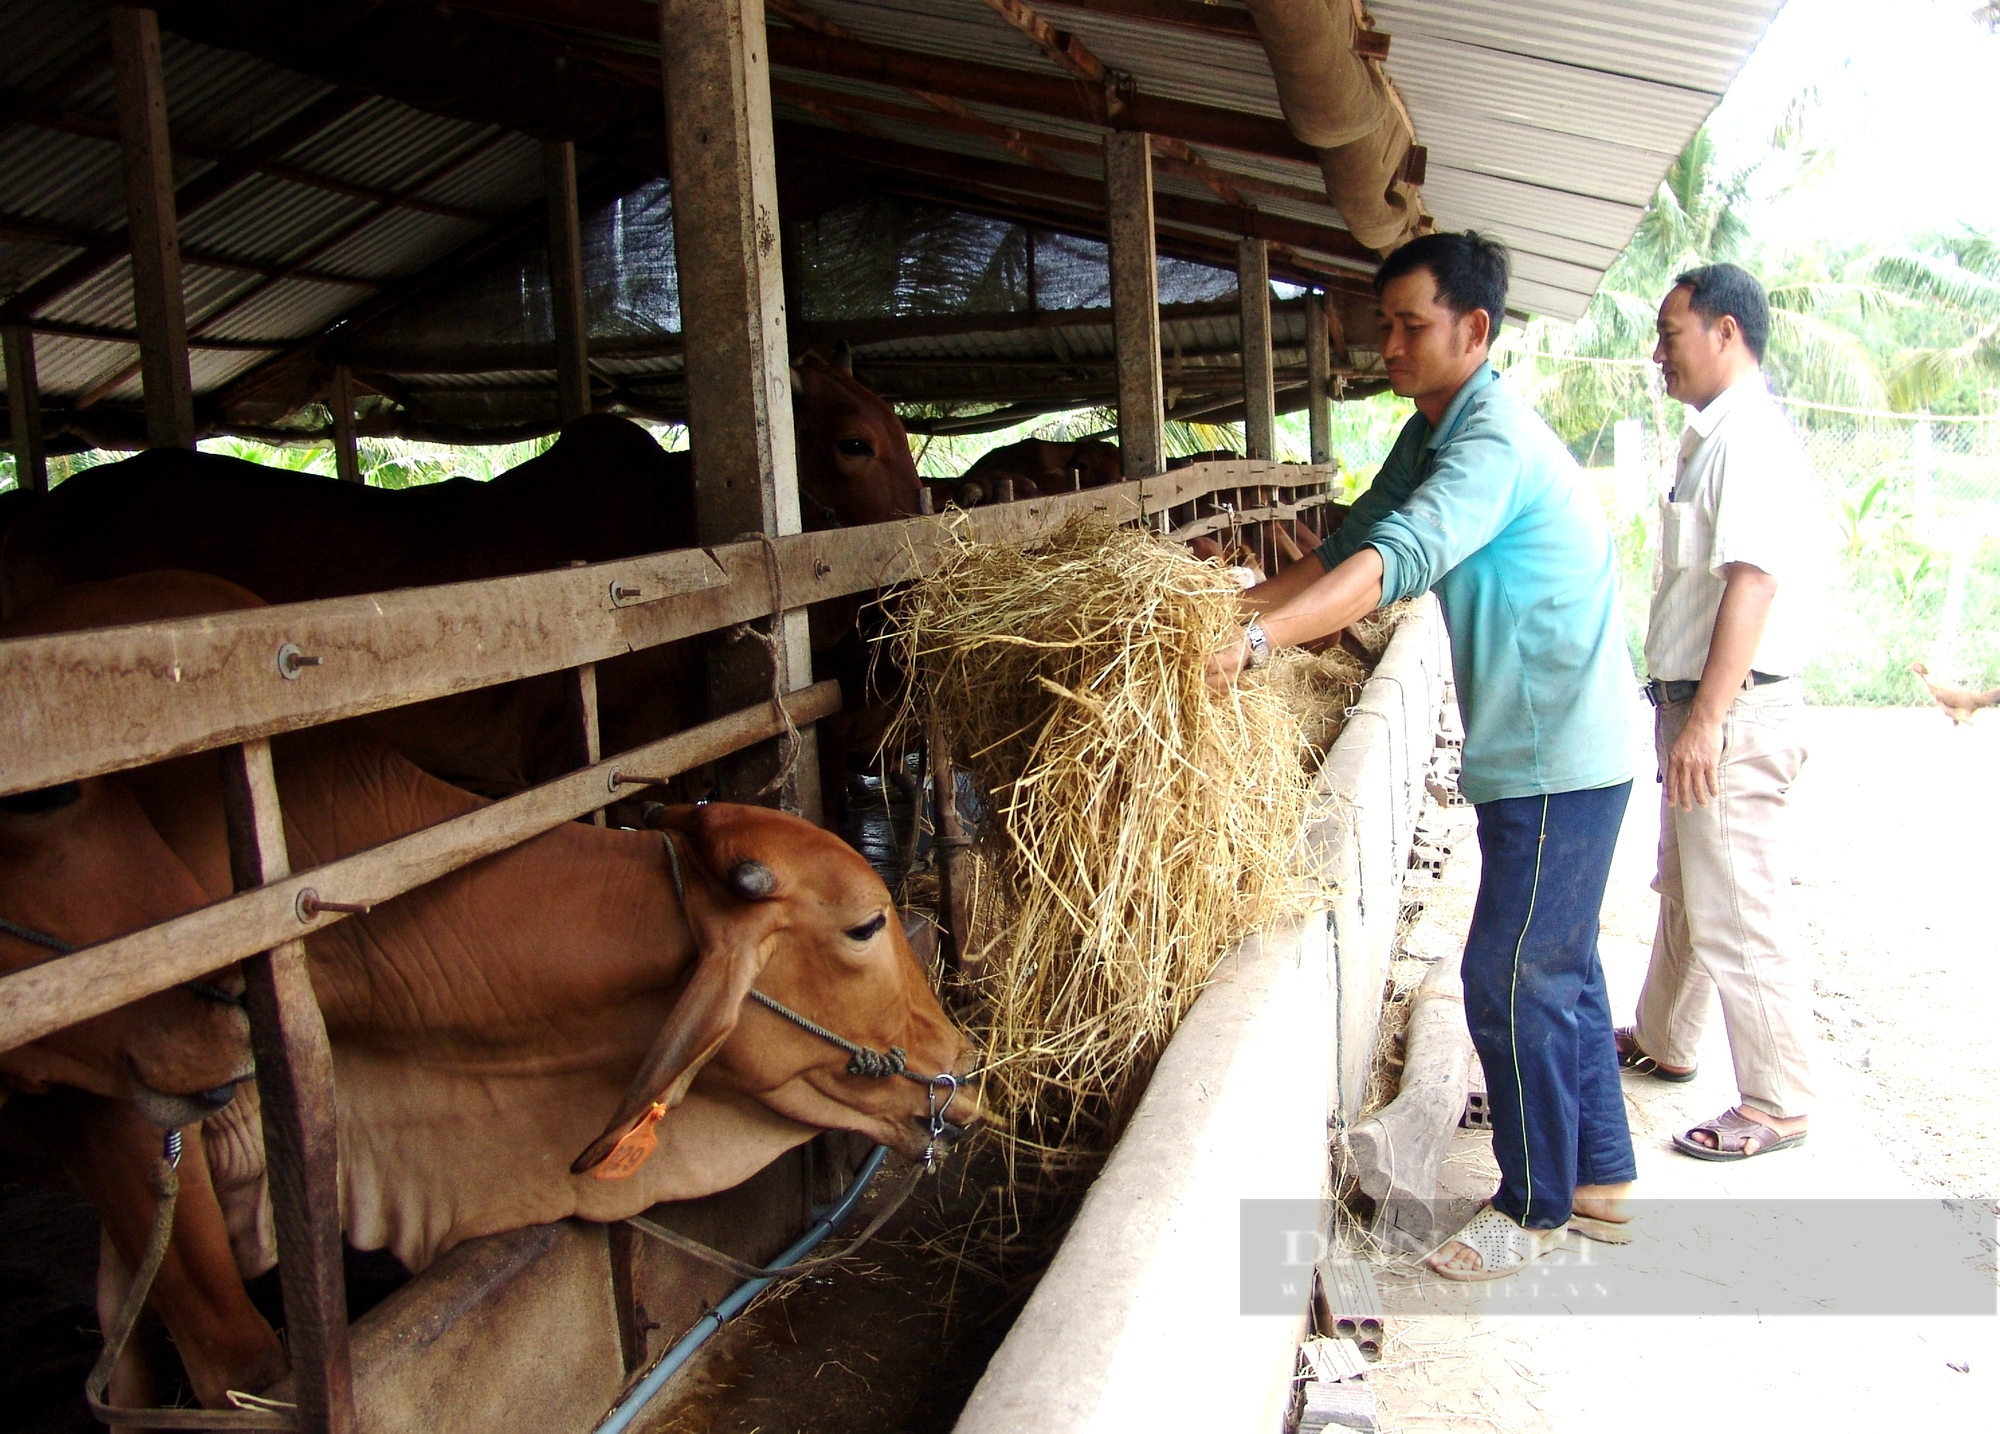 Giá thức ăn chăn nuôi tăng phi mã, nông dân phải “nhồi” cỏ nuôi bò - Ảnh 1.